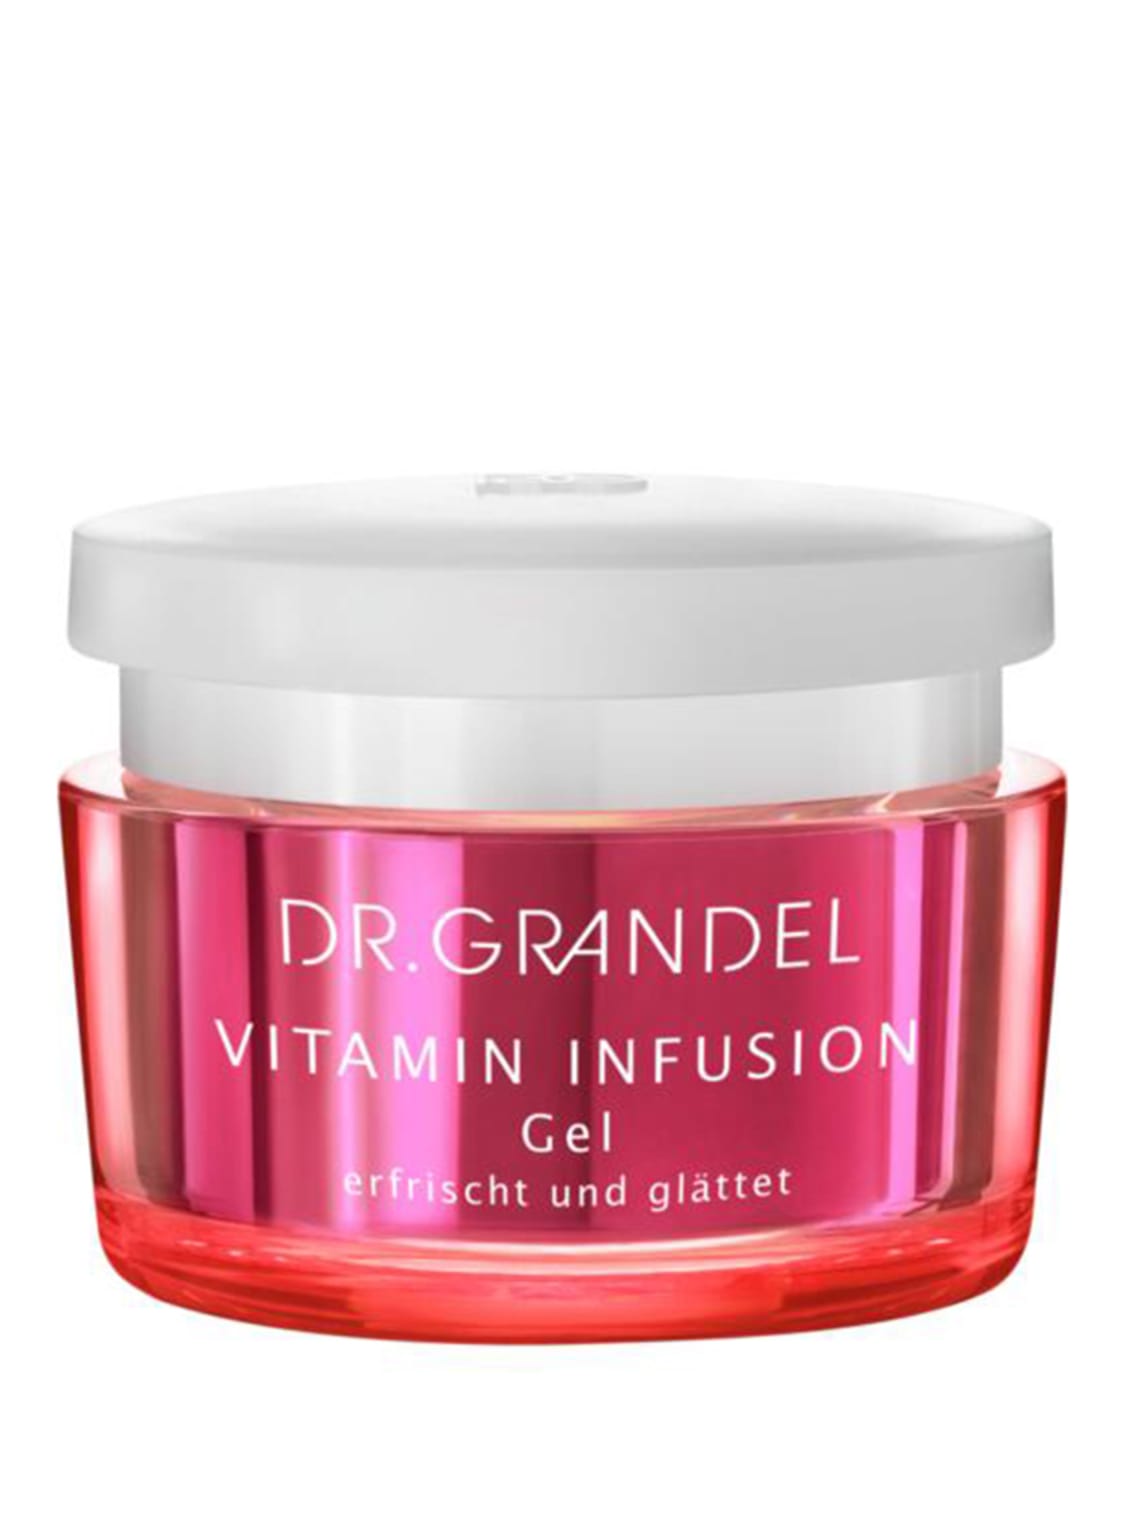 Dr. Grandel Vitamin Infusion 24 h Gelcreme 50 ml von DR. GRANDEL